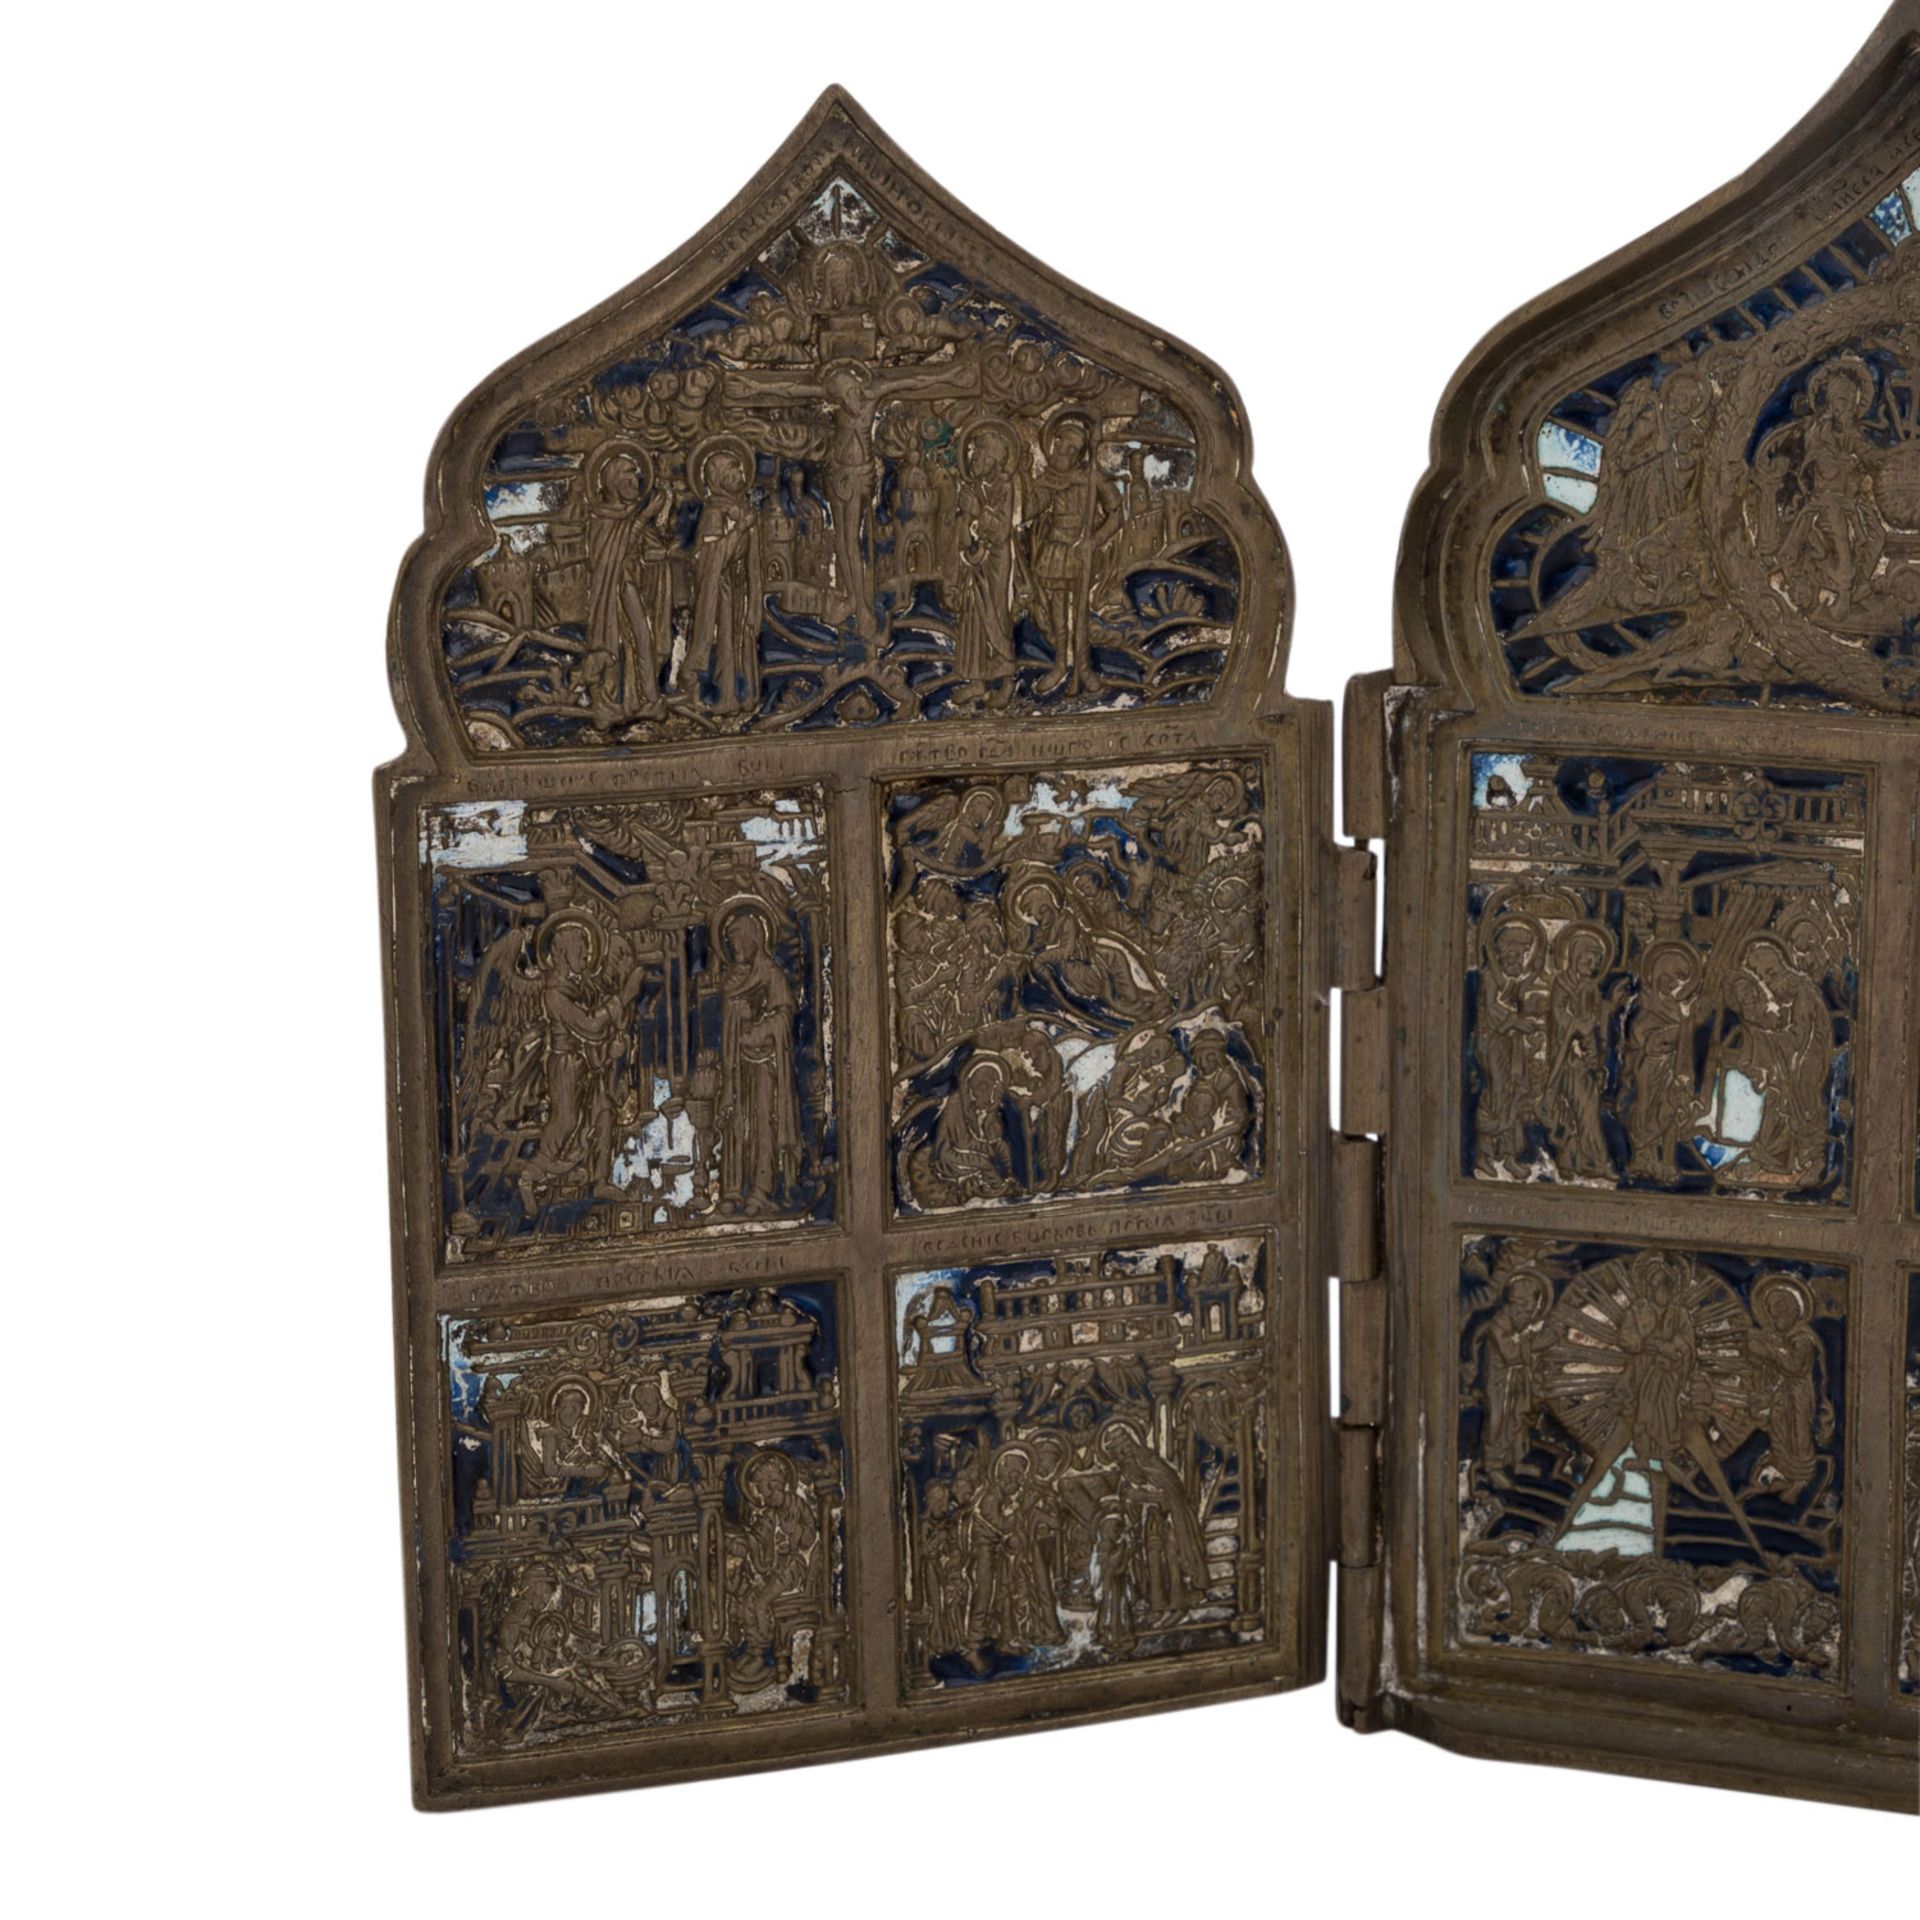 REISEIKONE, Russland 18. Jh., Bronze reliefiert, blau u. weiß emailliert,vier scharnierte Tafeln mit - Bild 3 aus 5